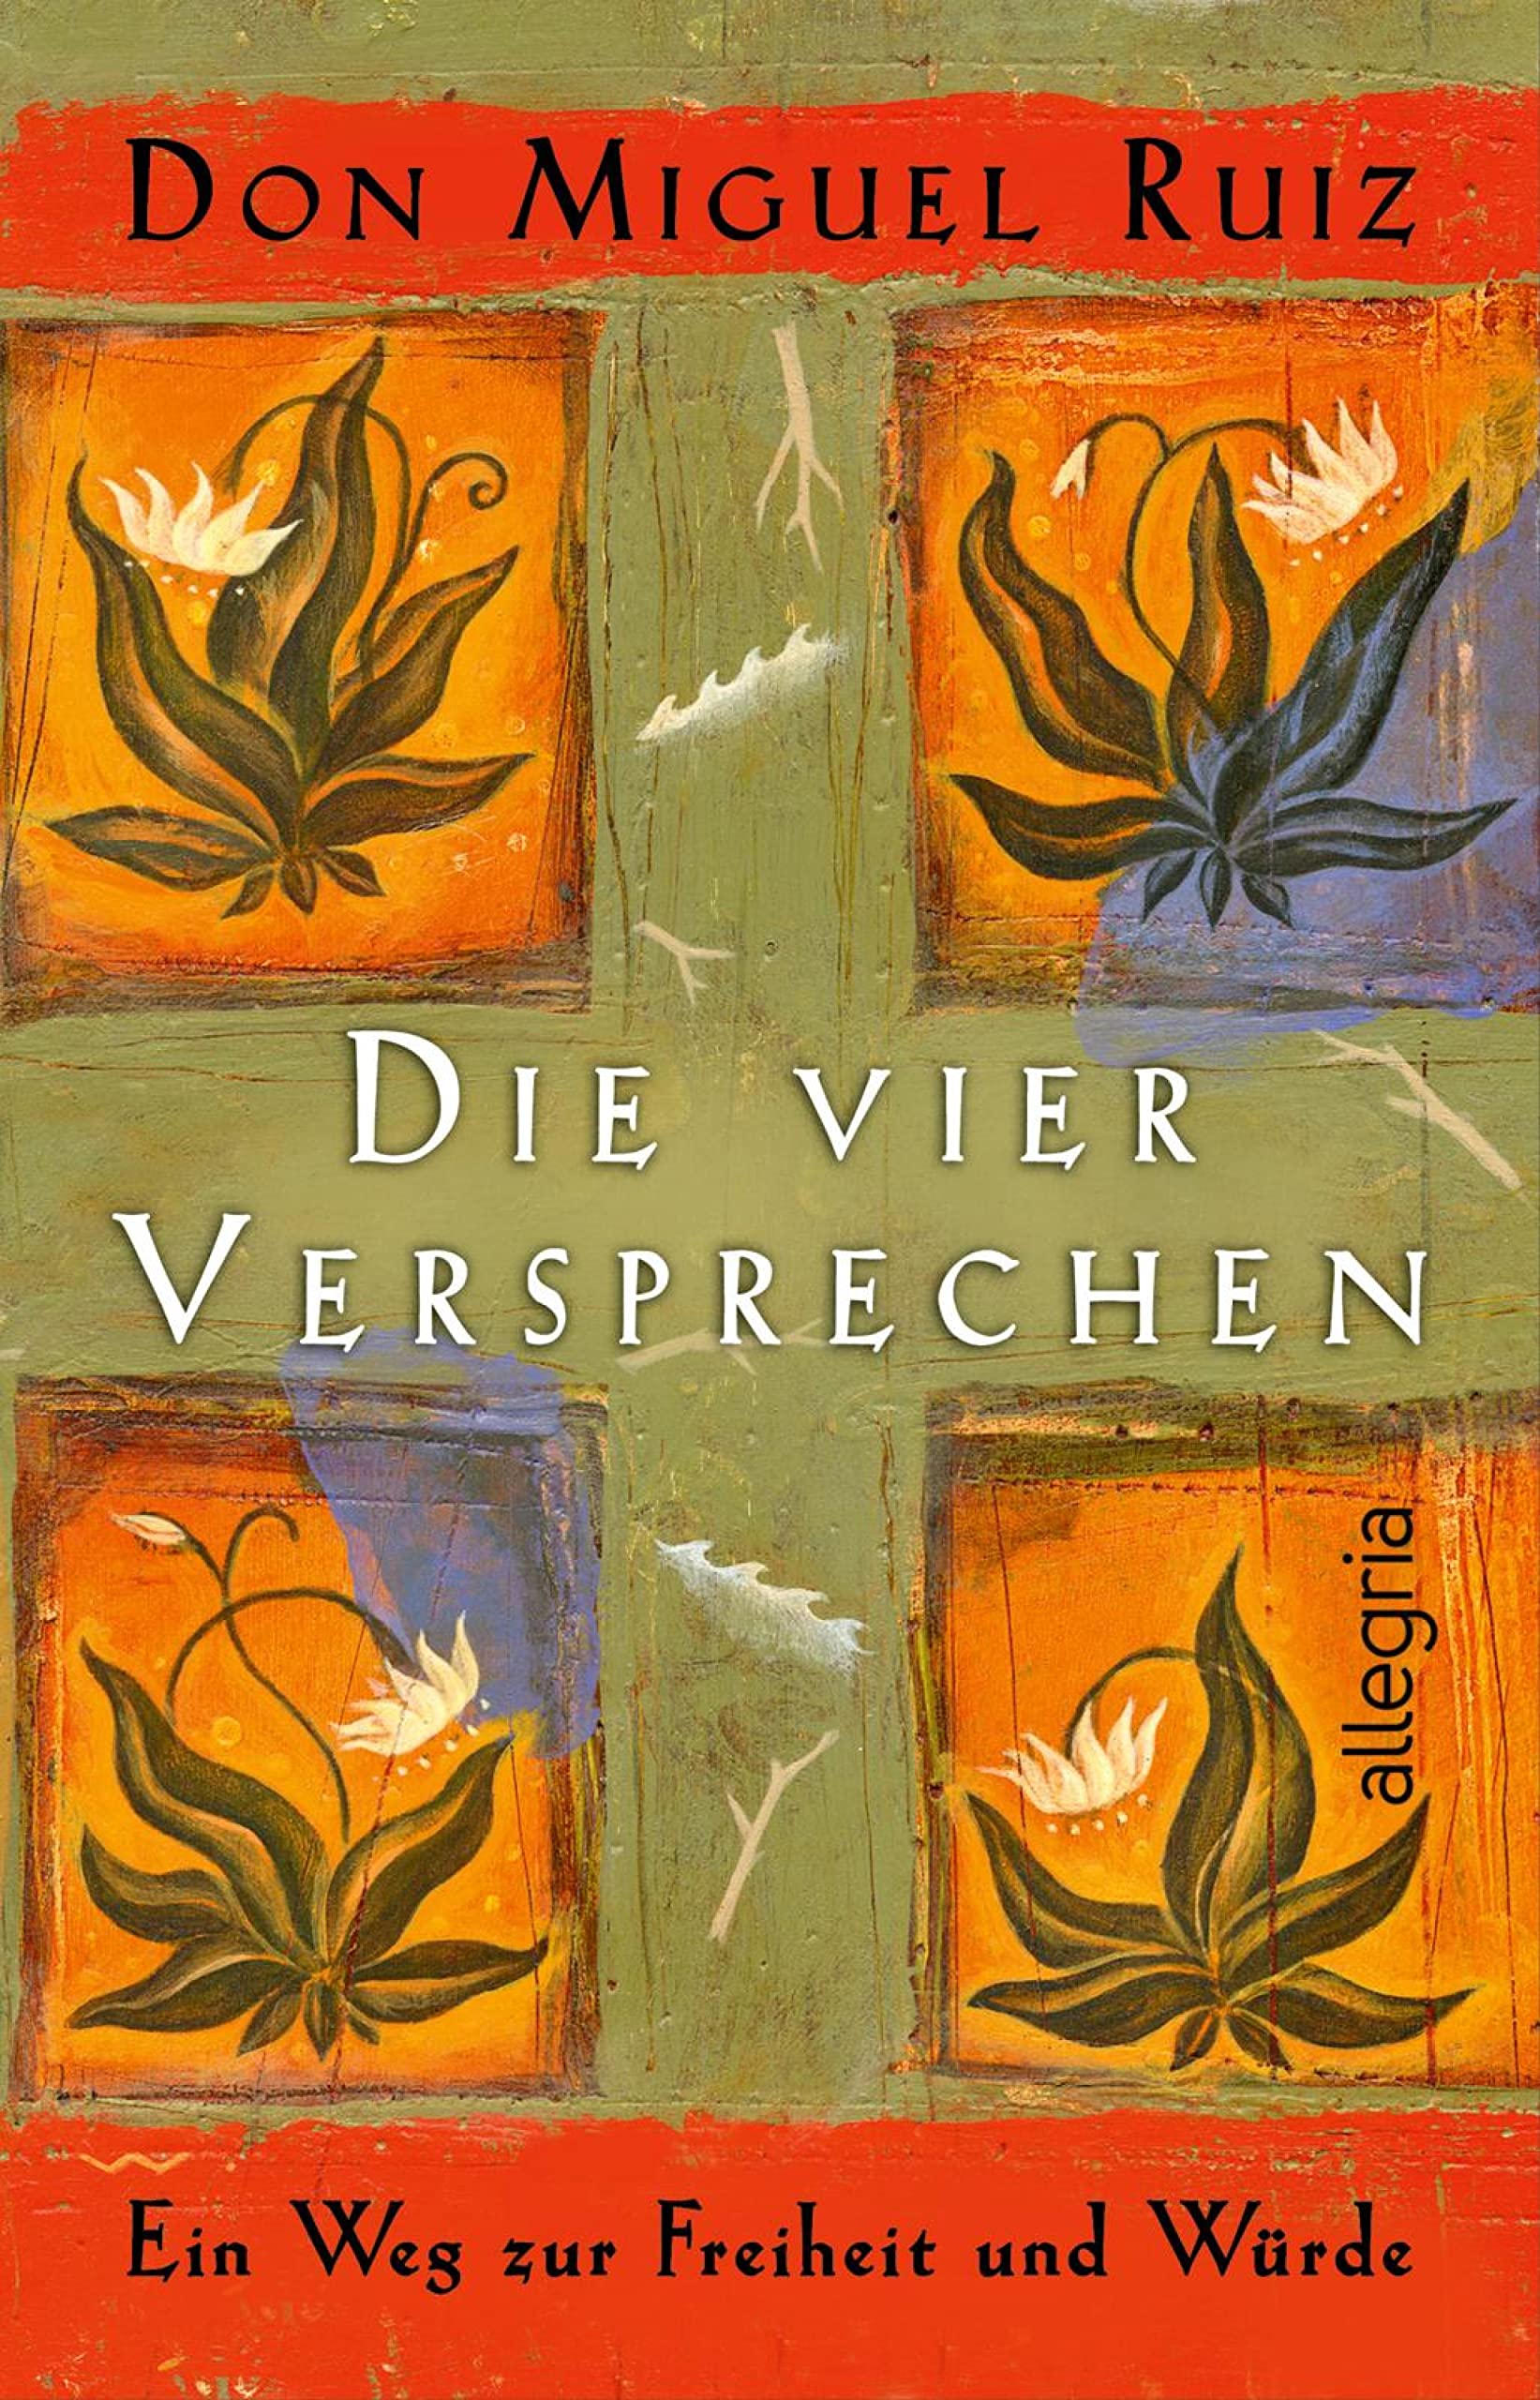 Die vier Versprechen: Ein Weg zur Freiheit und Würde | Der spirituelle Klassiker (German Edition)